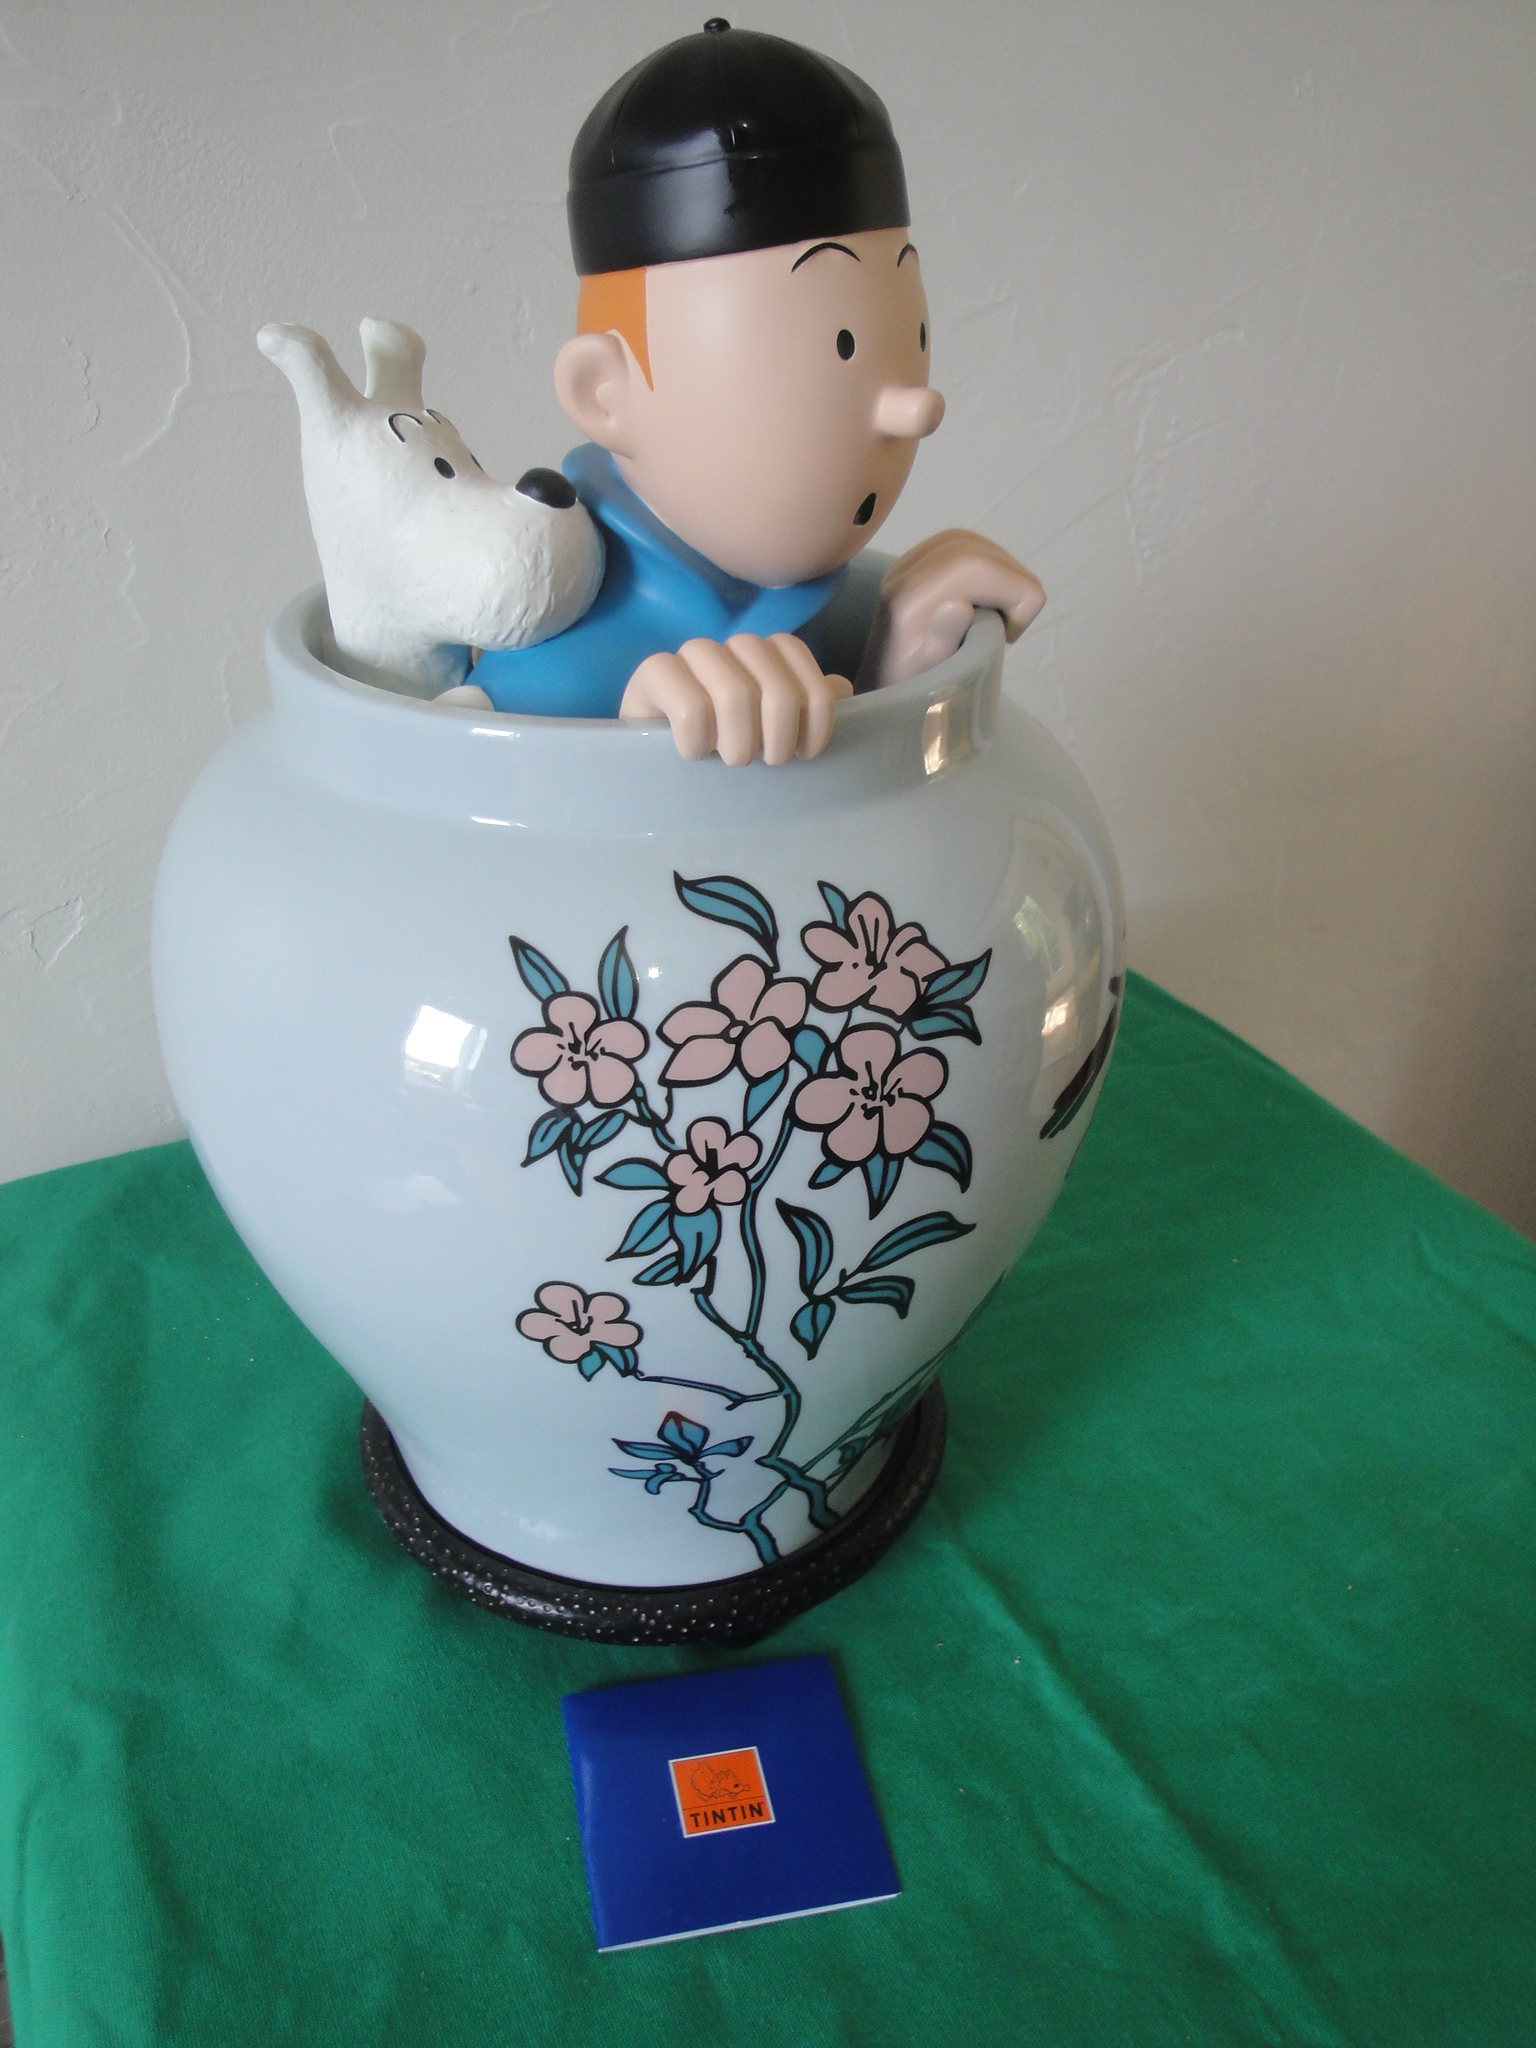 Tintin dans la potiche 44 cm – Moulinsart 46971 – 2011 – tirage limité à 1000 exemplaires